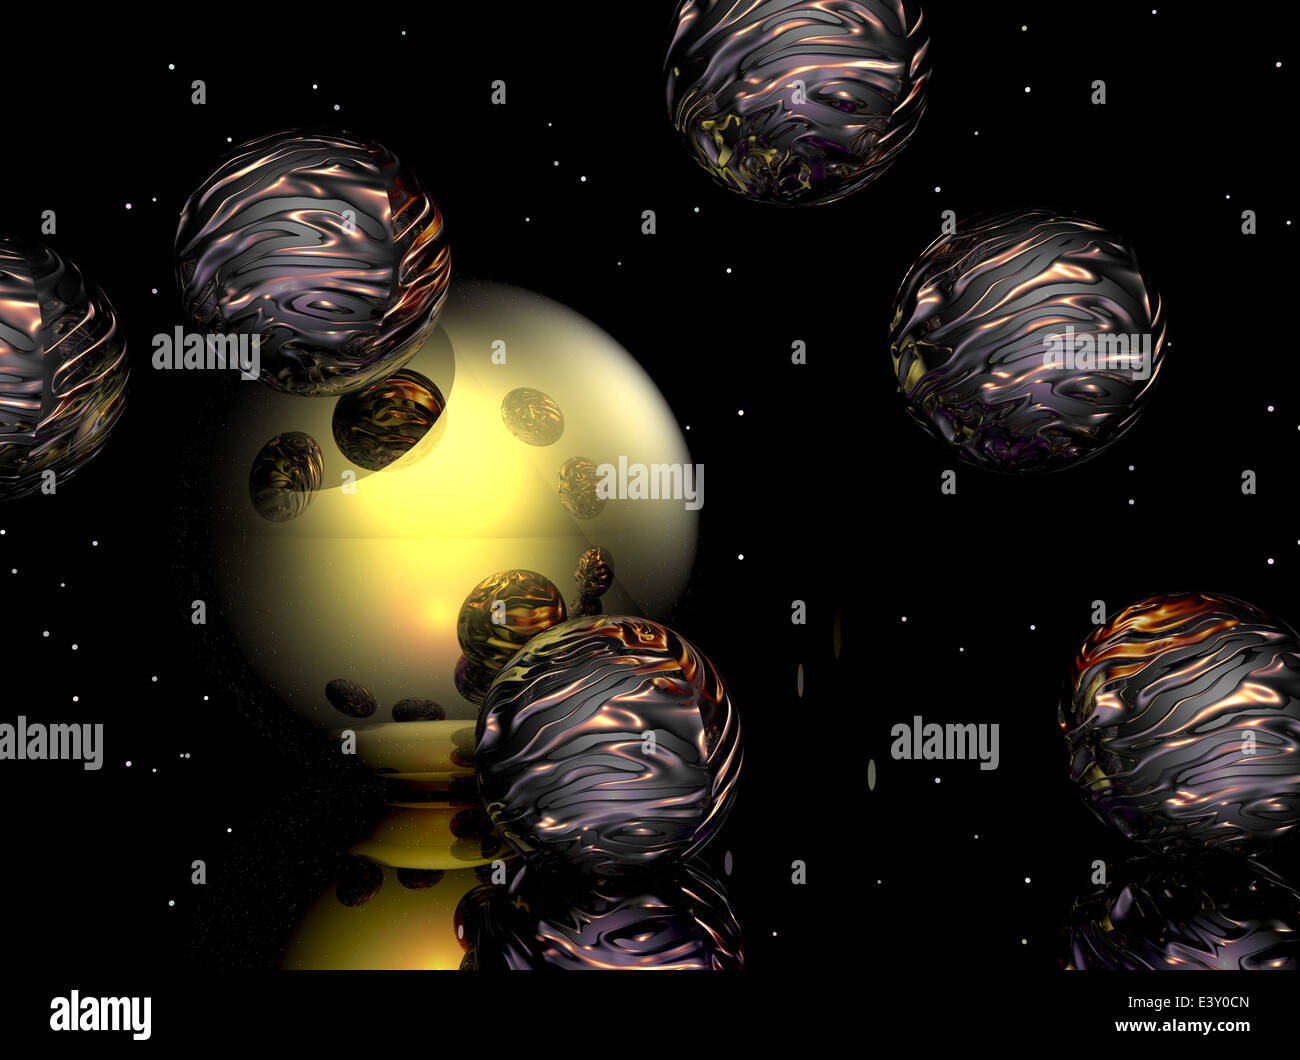 Computer immagine generata di sfere trasparente su sfondo colorato Foto Stock